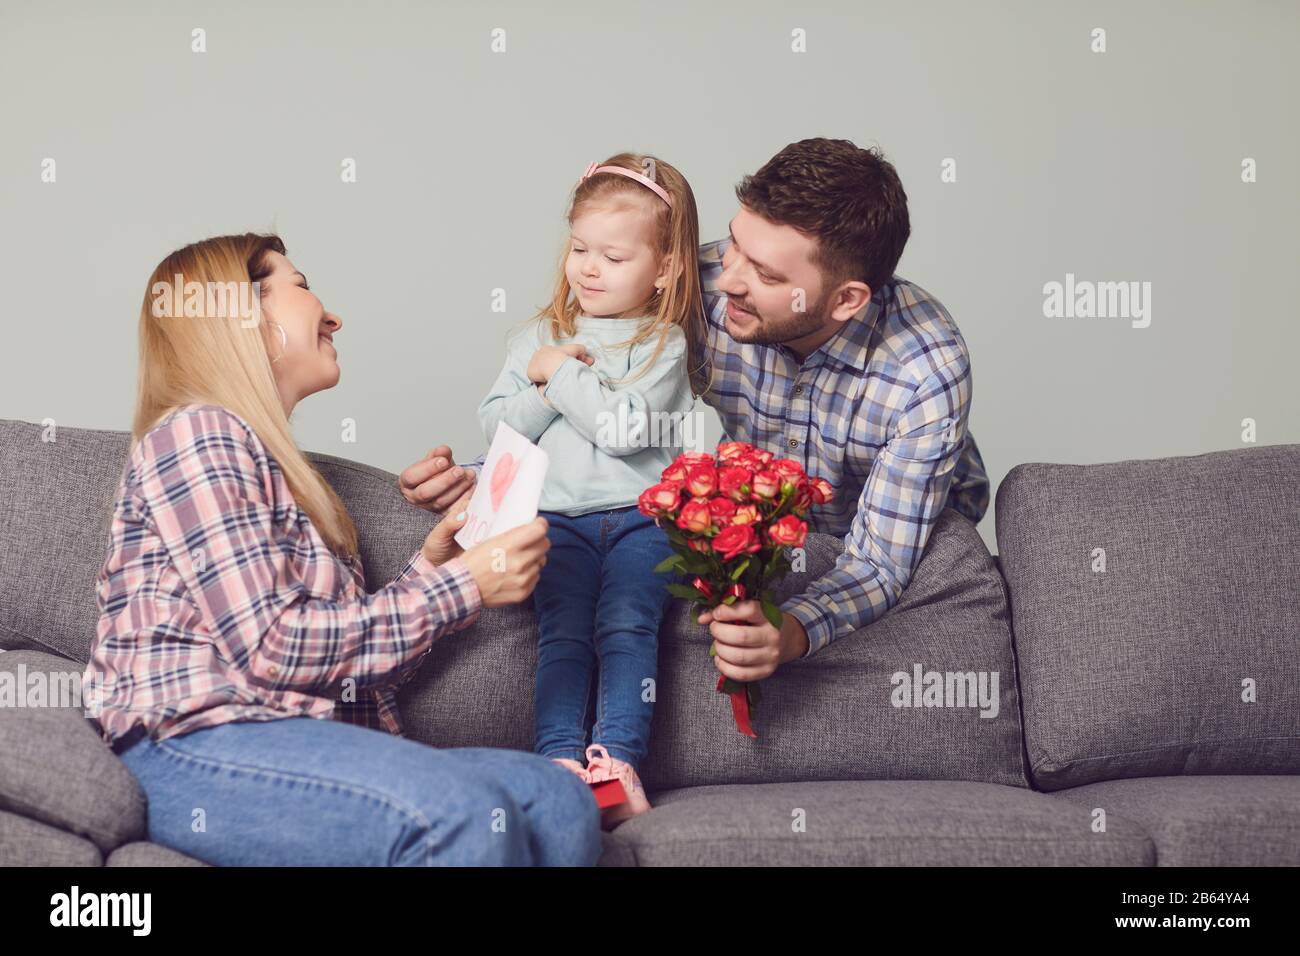 Buon giorno della madre. I bambini e il padre si congratulano con la mamma con i fiori dono Foto Stock